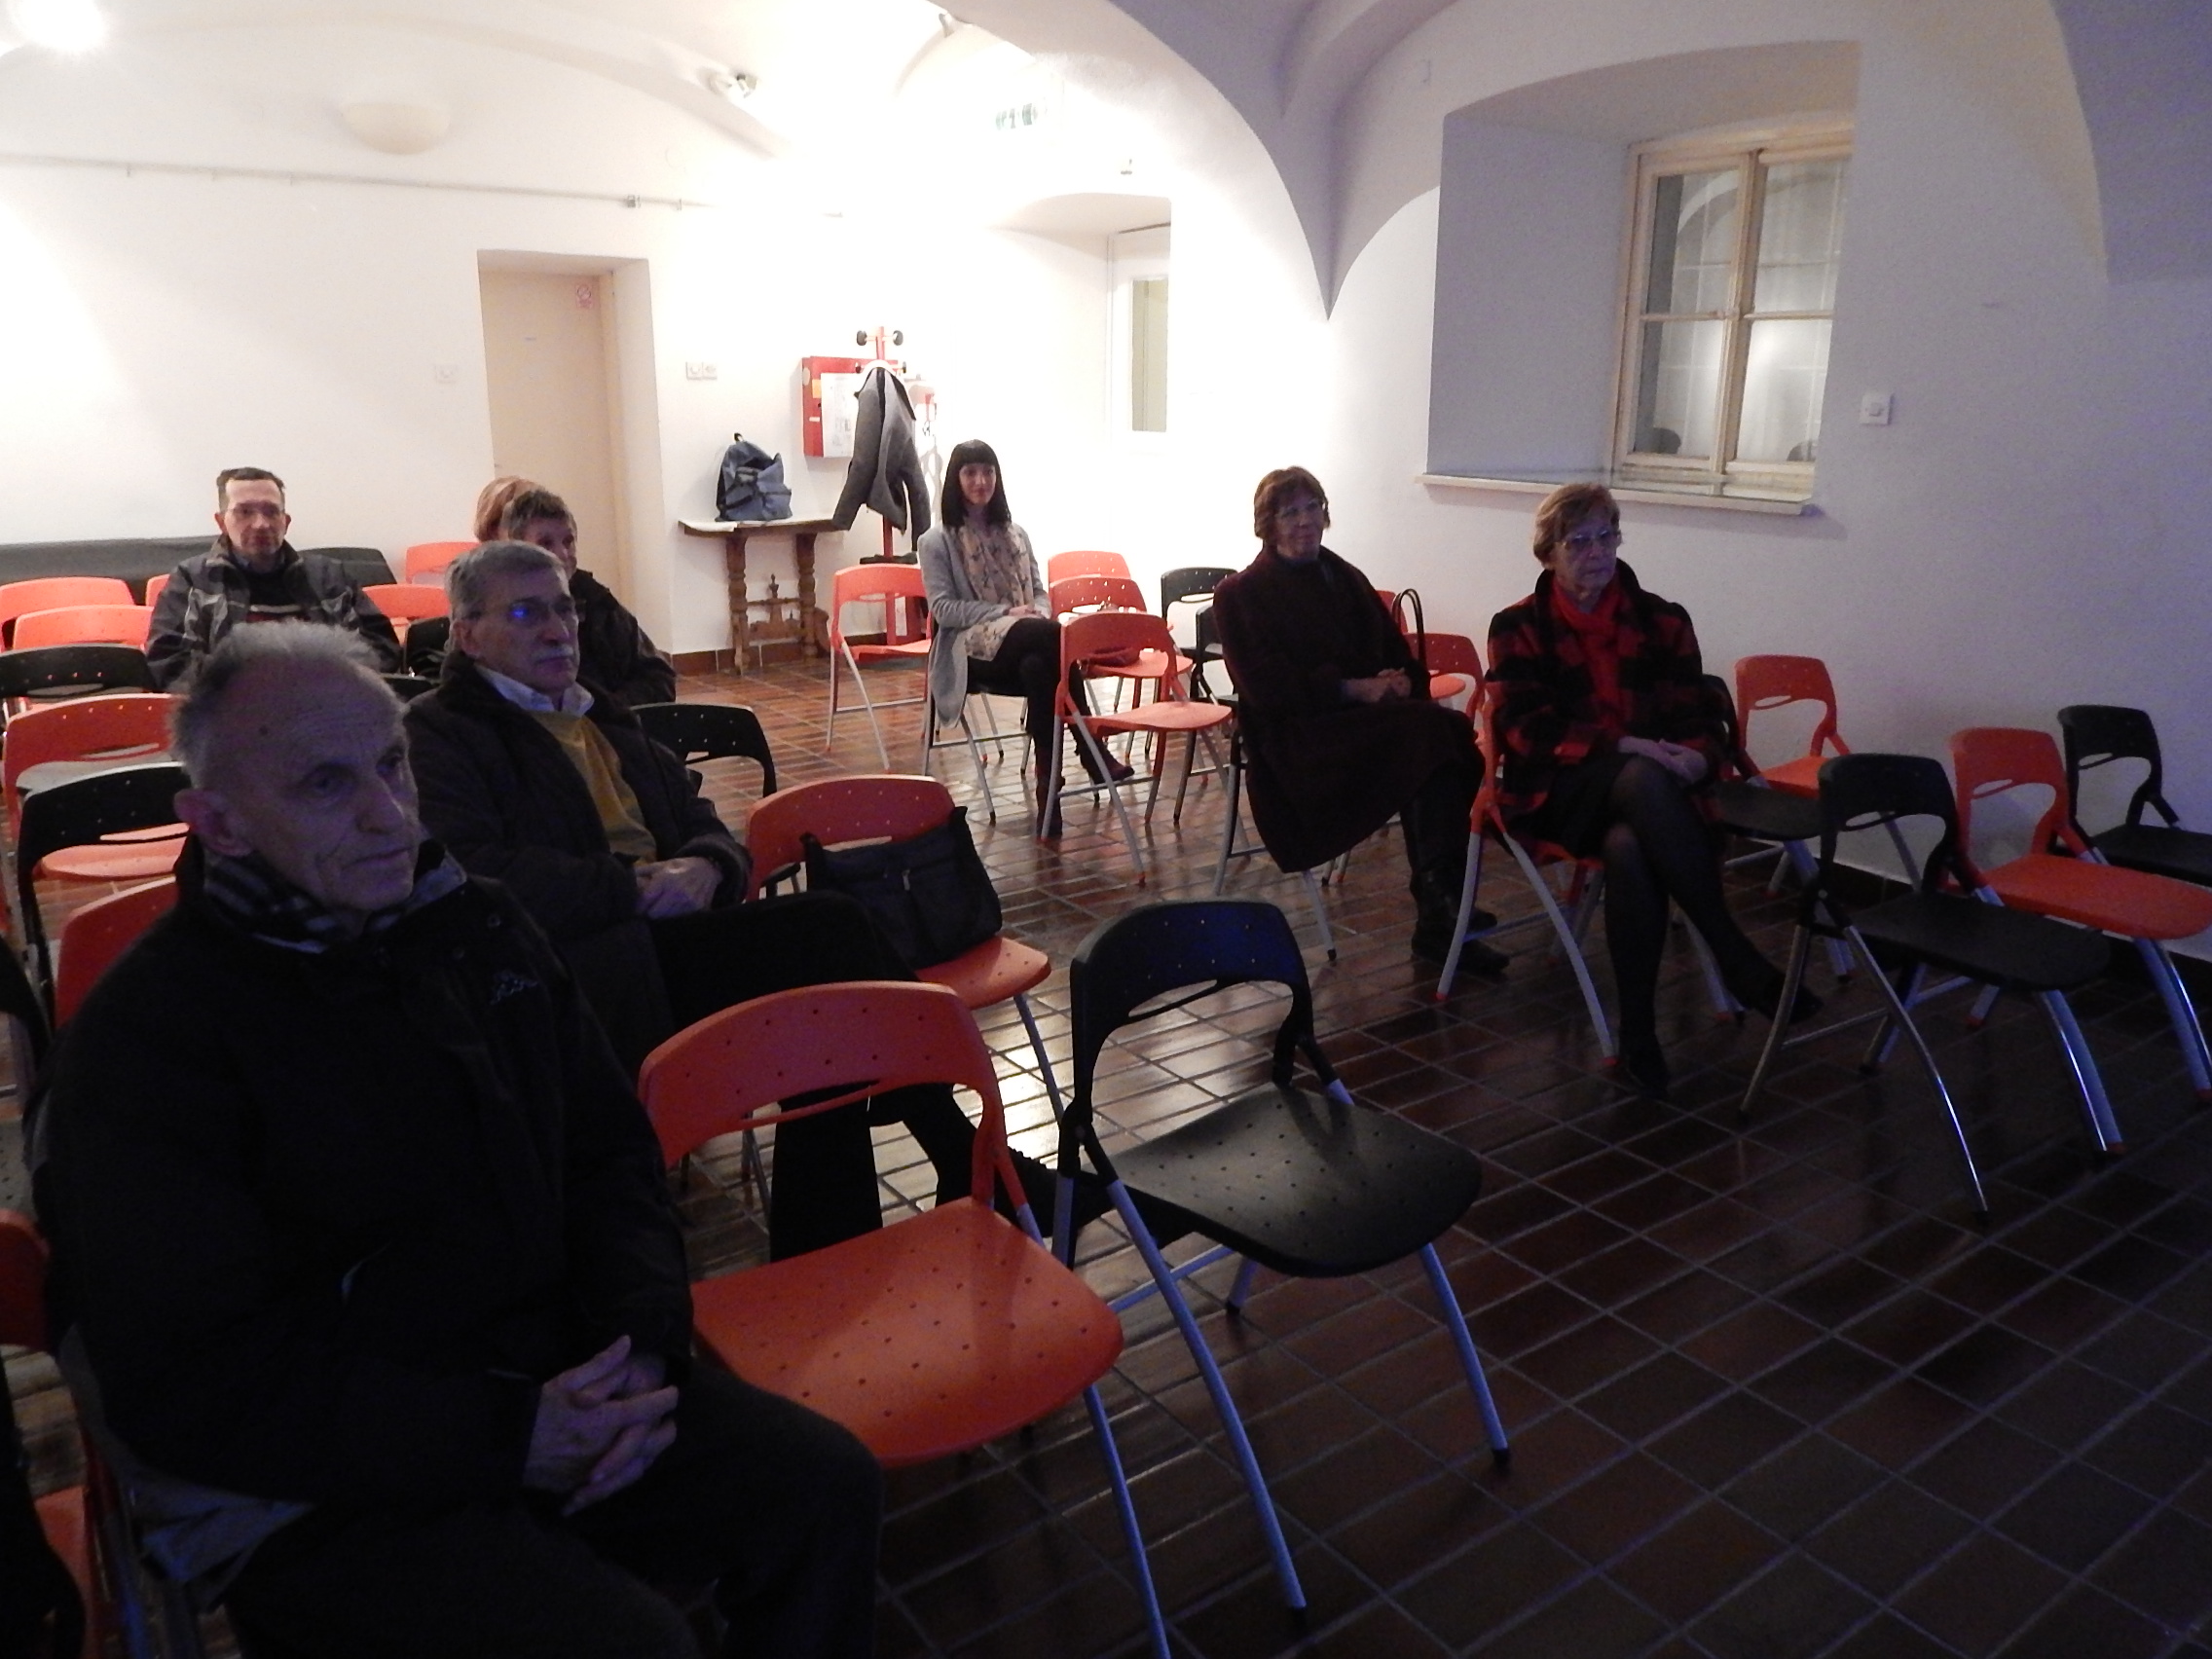 Projekcija filma "Slučaj maturanta Wagnera" održana 23. prosinca 2015. godine u Gradskom muzeju Karlovac u sklopu projekta "Marijan Matković u mozaiku karlovačke kulturno-umjetničke baštine". Foto: Marin Bakić